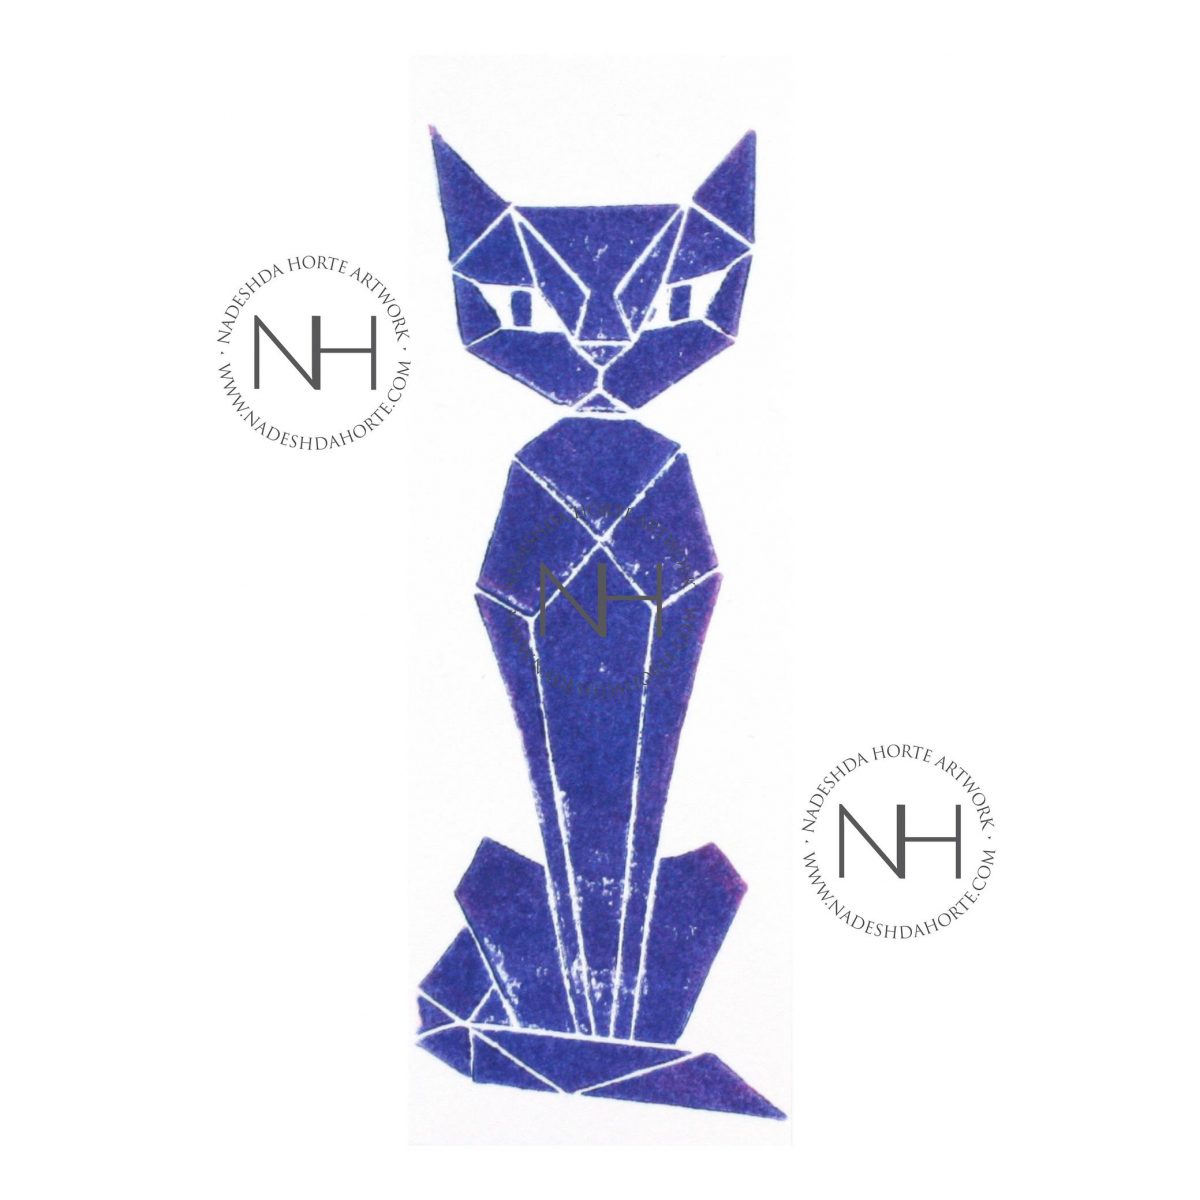 Lesezeichen, Geometrische Katze, Blau, Nadeshda Horte